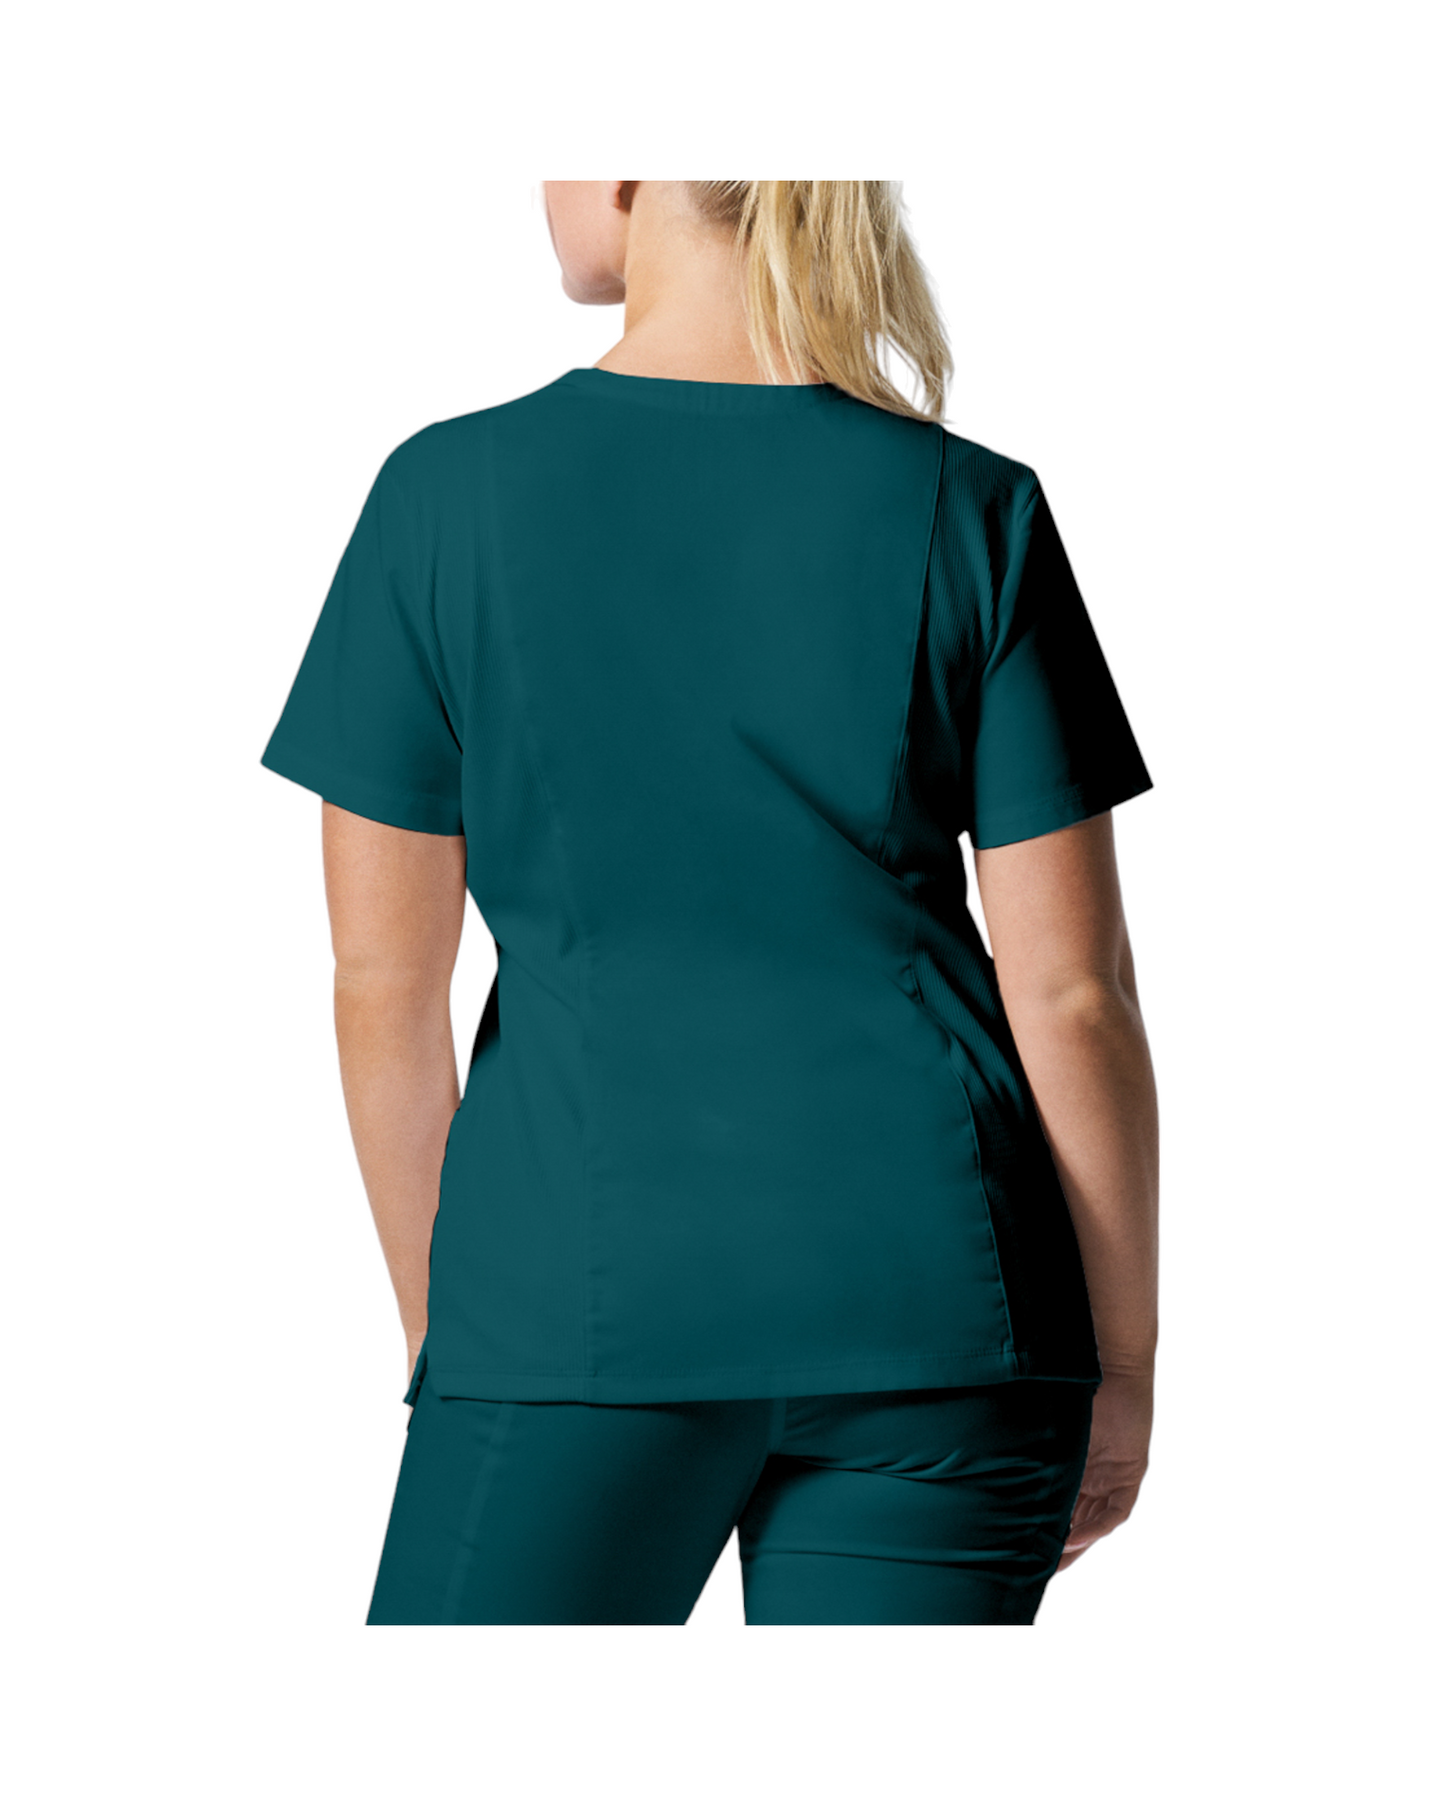 Uniforme de marque landau pour femmes taille plus. Travailleuses du domaine de la santé. LT105-OS couleur Caraïbes, col en V.